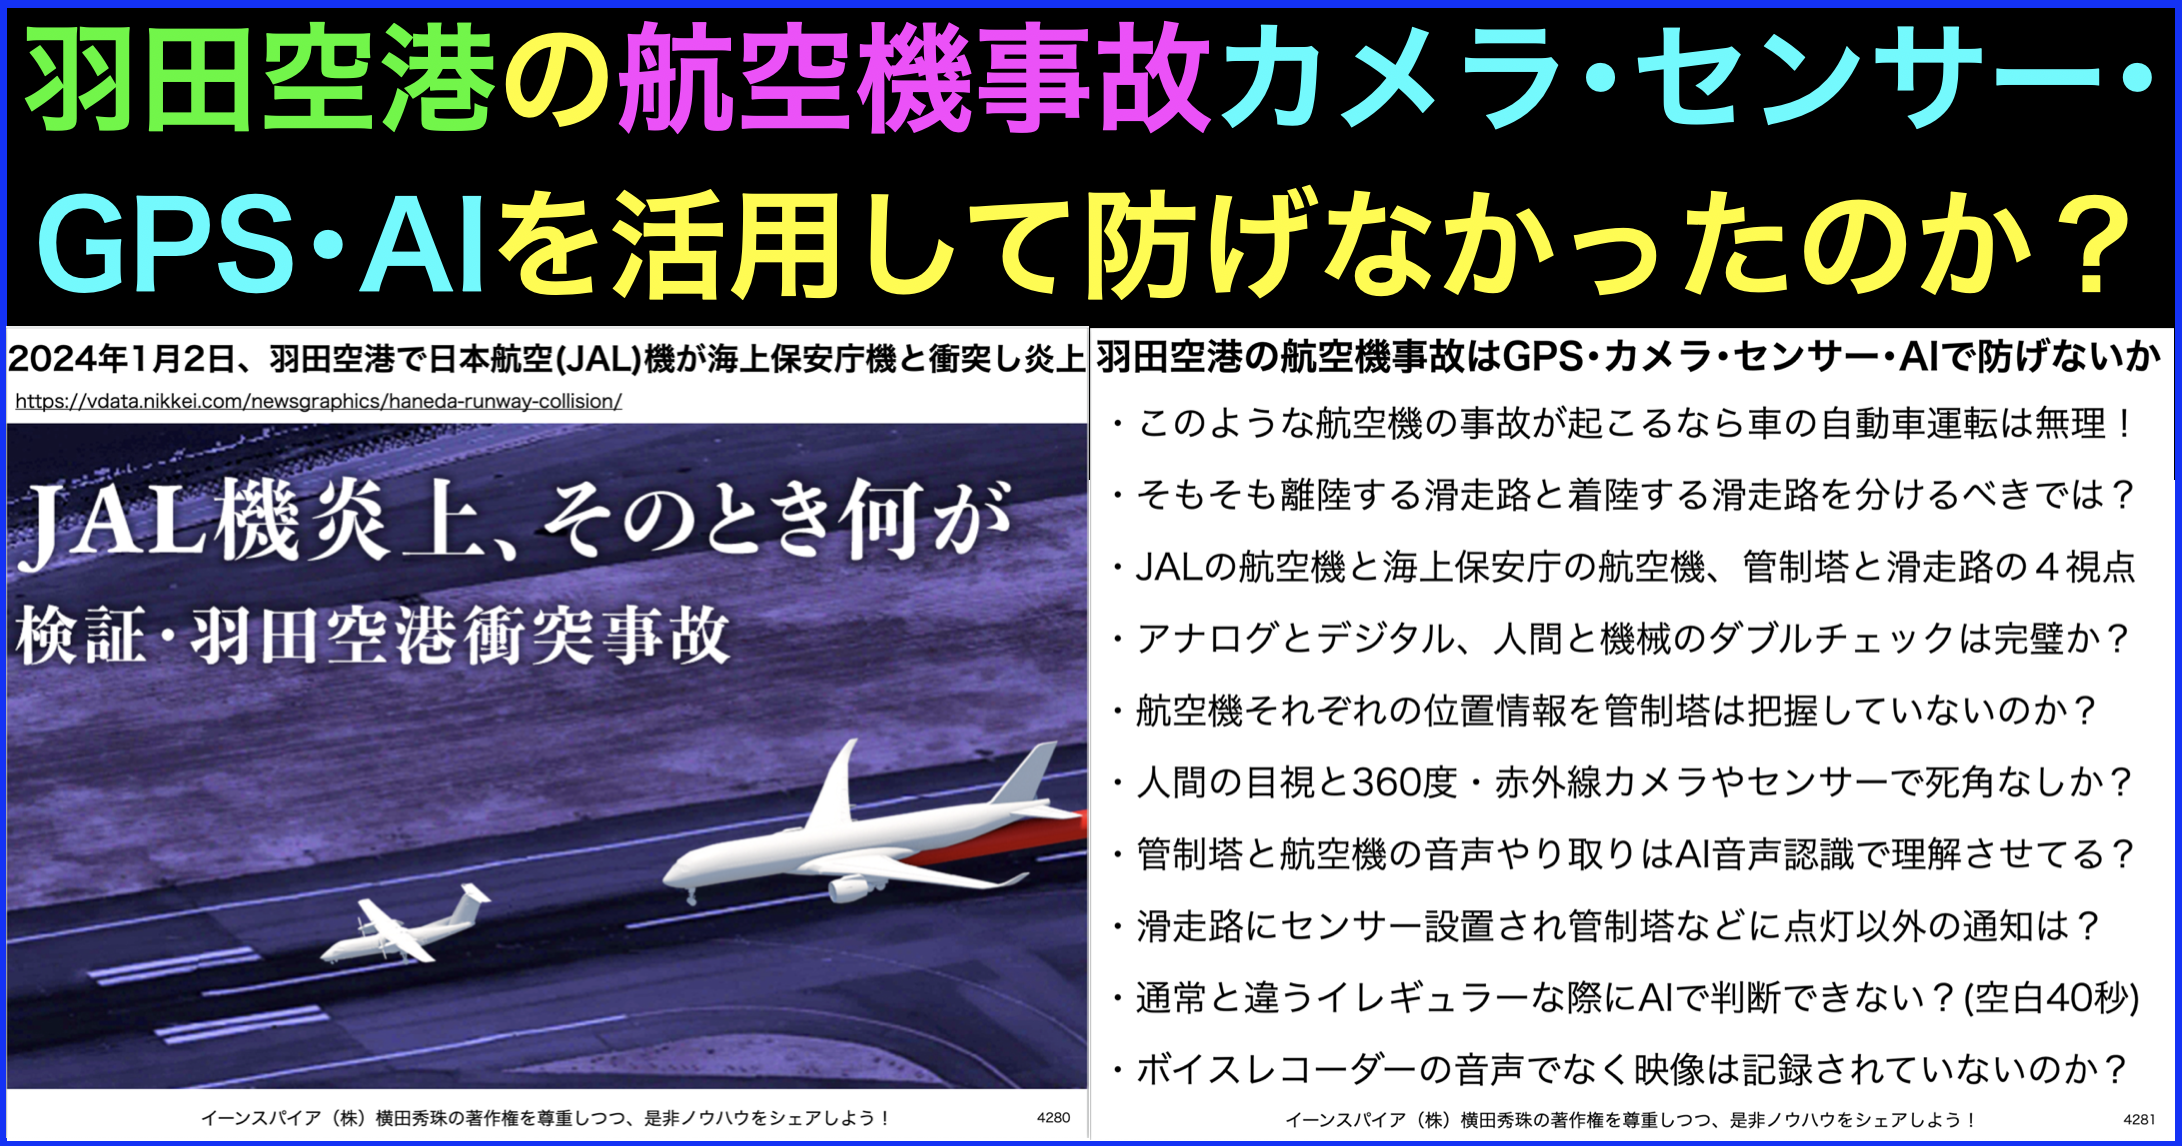 羽田の航空機事故をカメラ･センサー･GPS･AIの活用で防ぐ方法